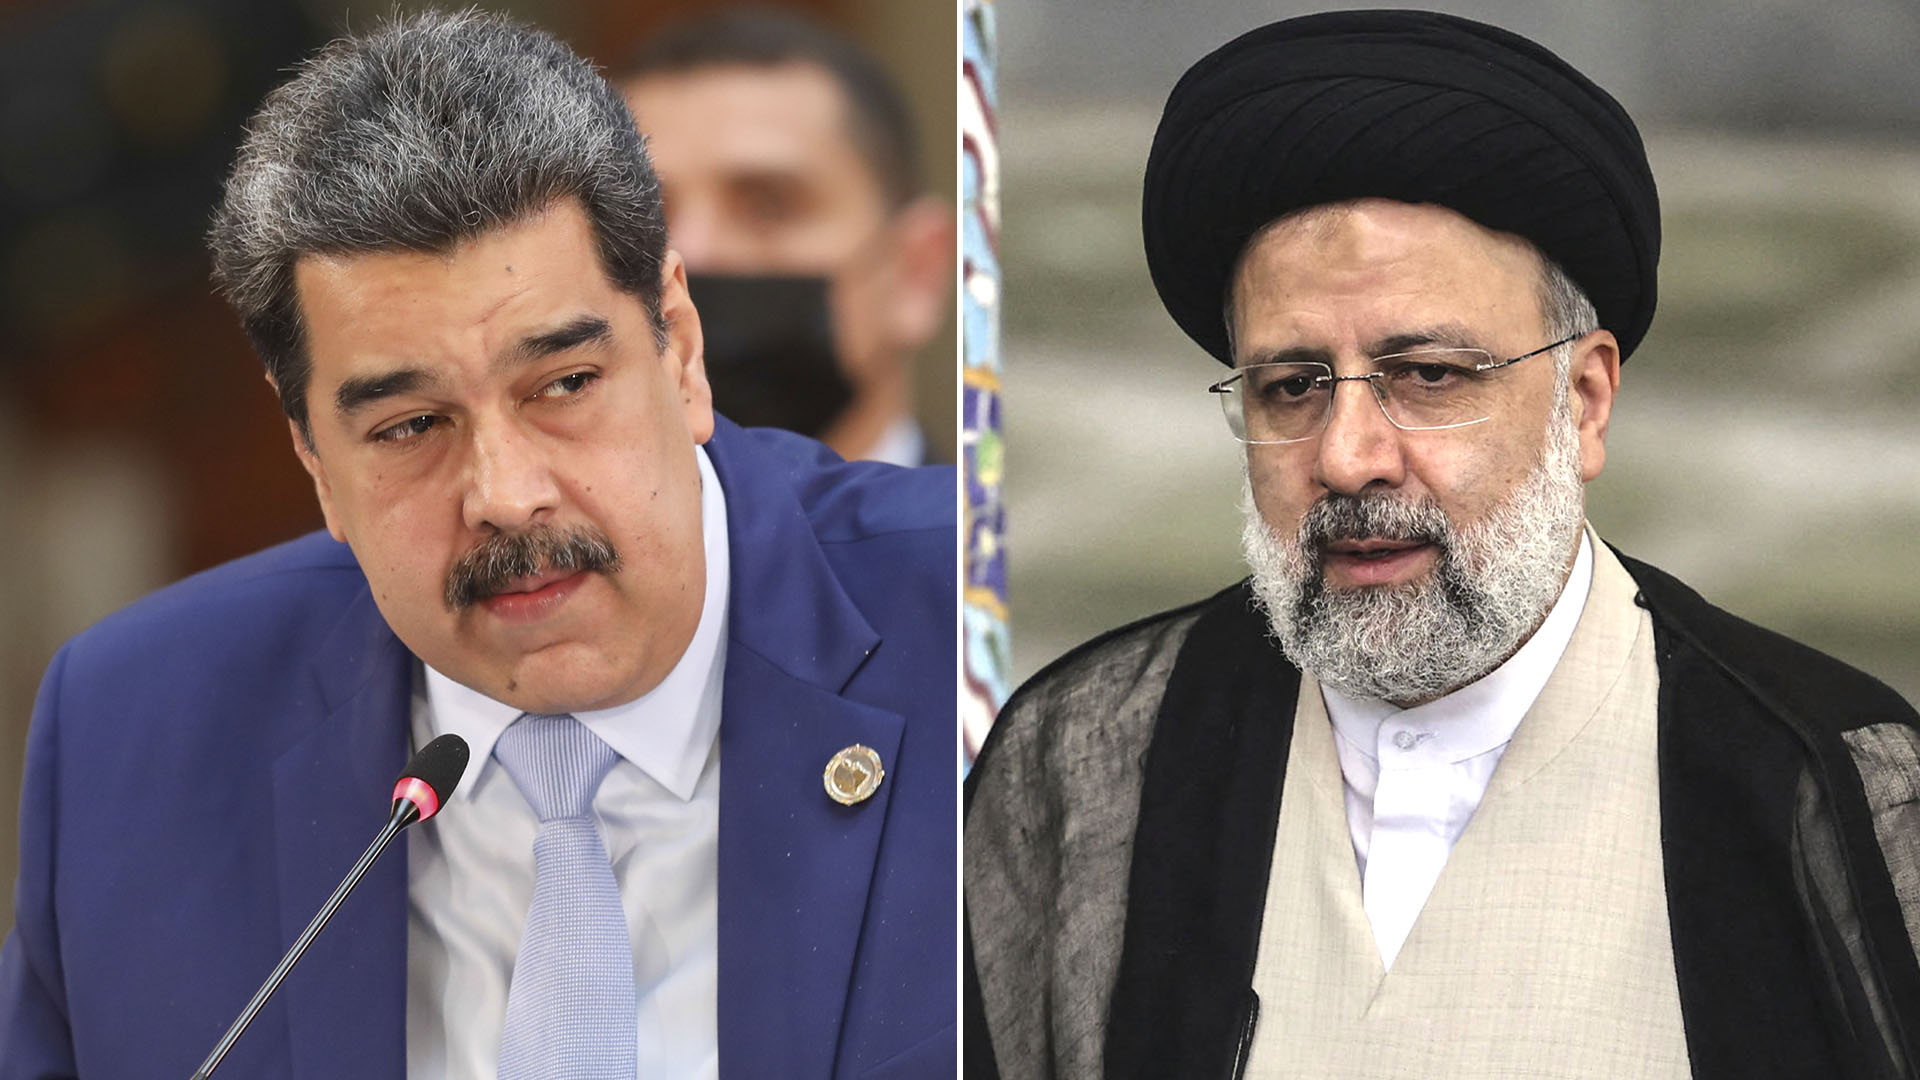 Los regímenes de Venezuela e Irán pactaron un canje petrolero que viola las sanciones internacionales
